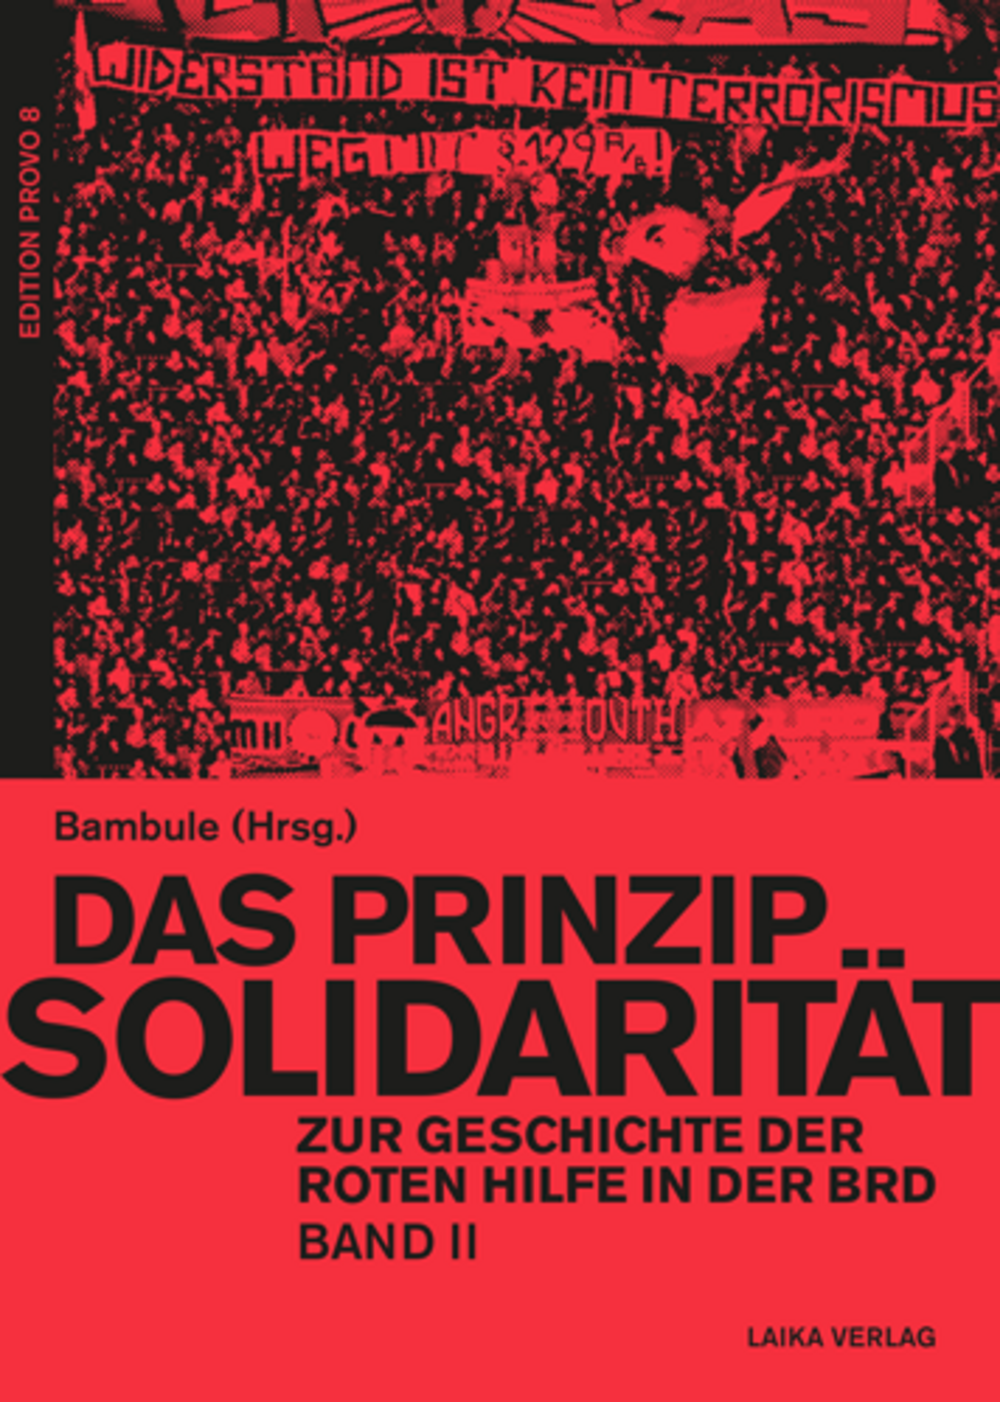 prinzip-solidaritaet-2